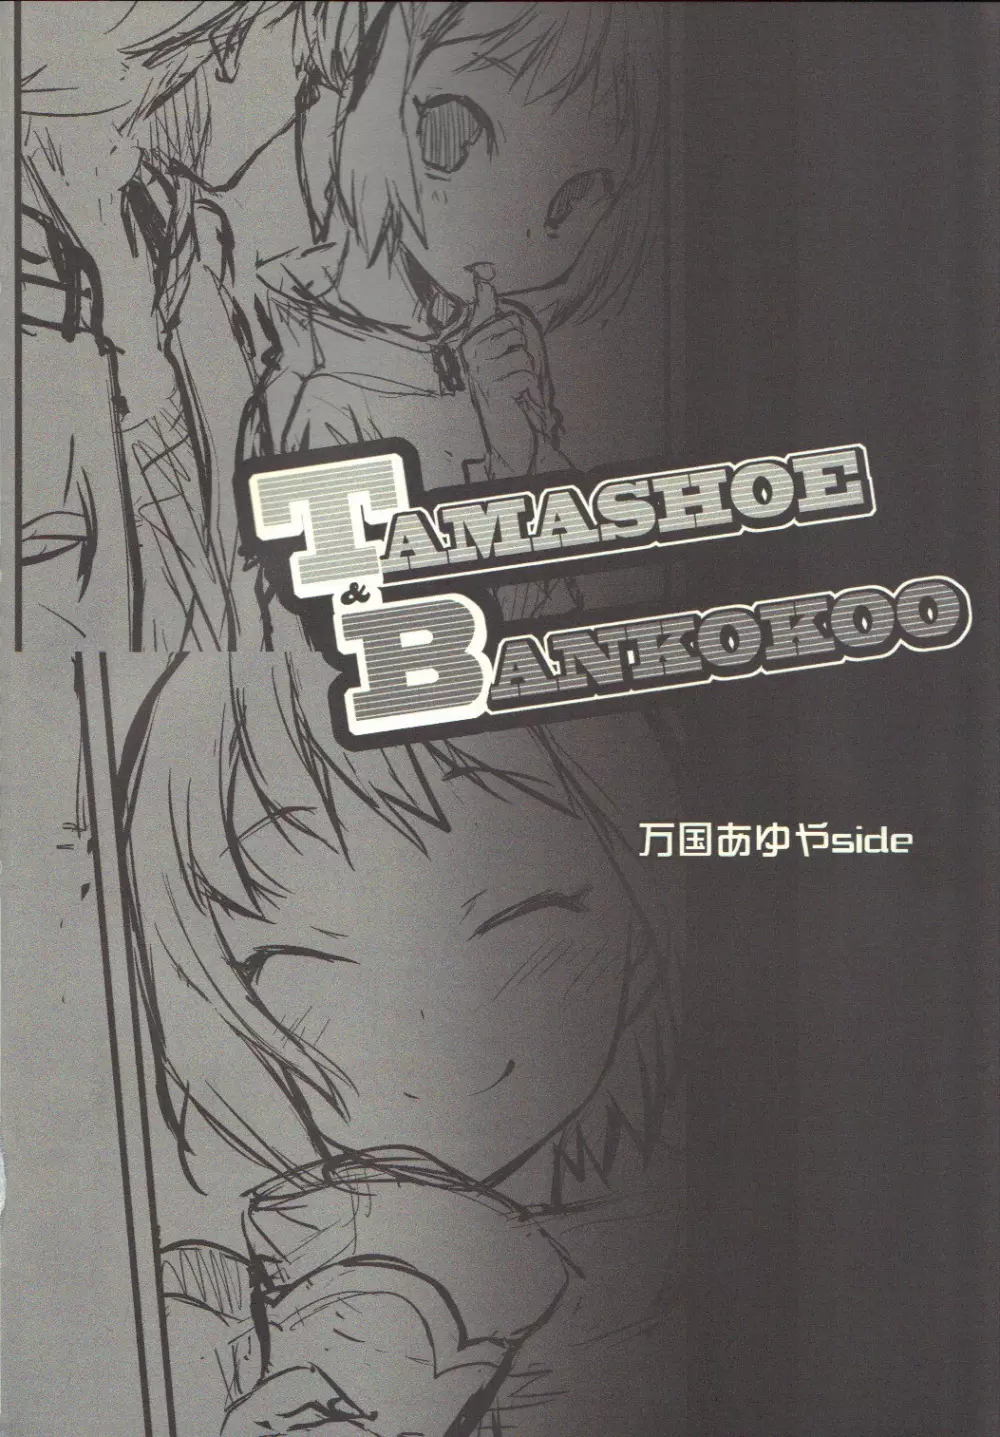 TAMASHOE&BANKOKOO - page3